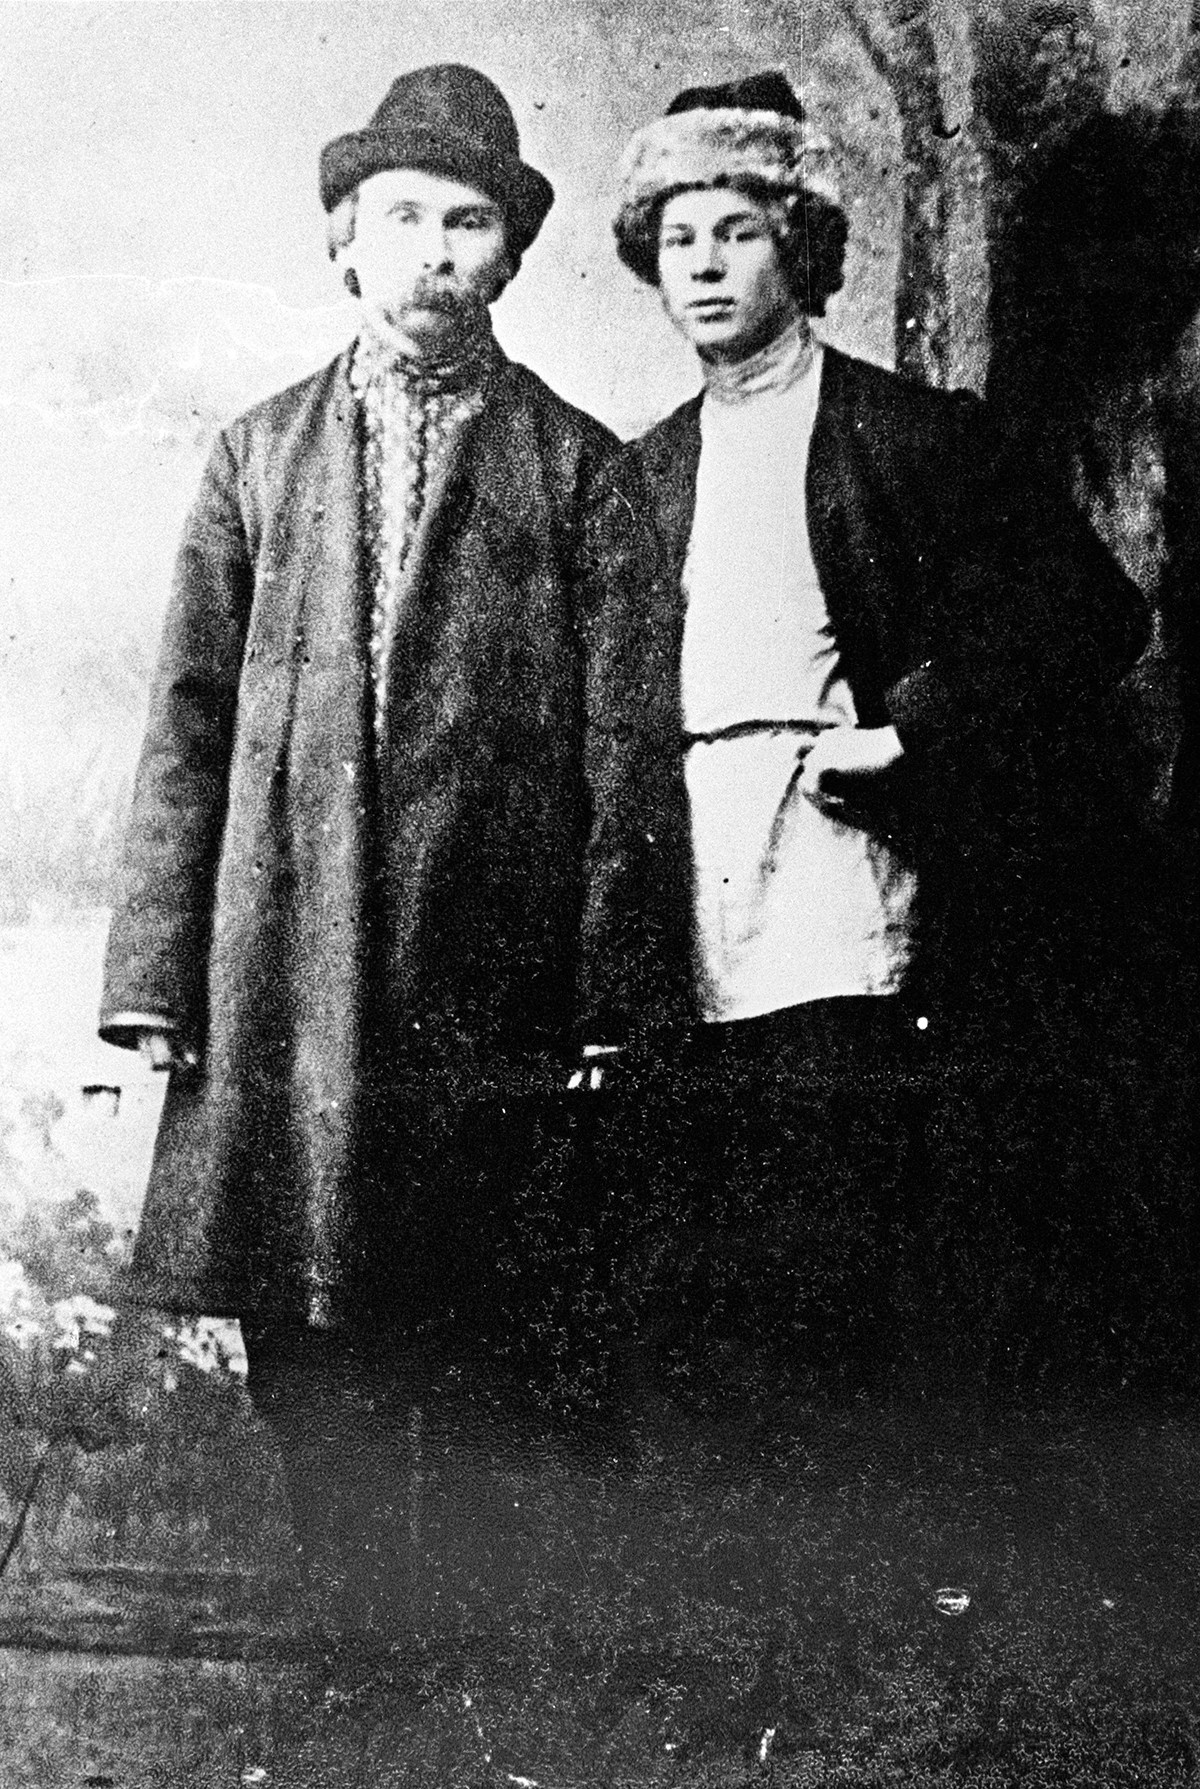 'Peasant poets' Nikolai Klyuev and Sergei Yesenin (R) in Petrograd (current St. Petersburg), 1915